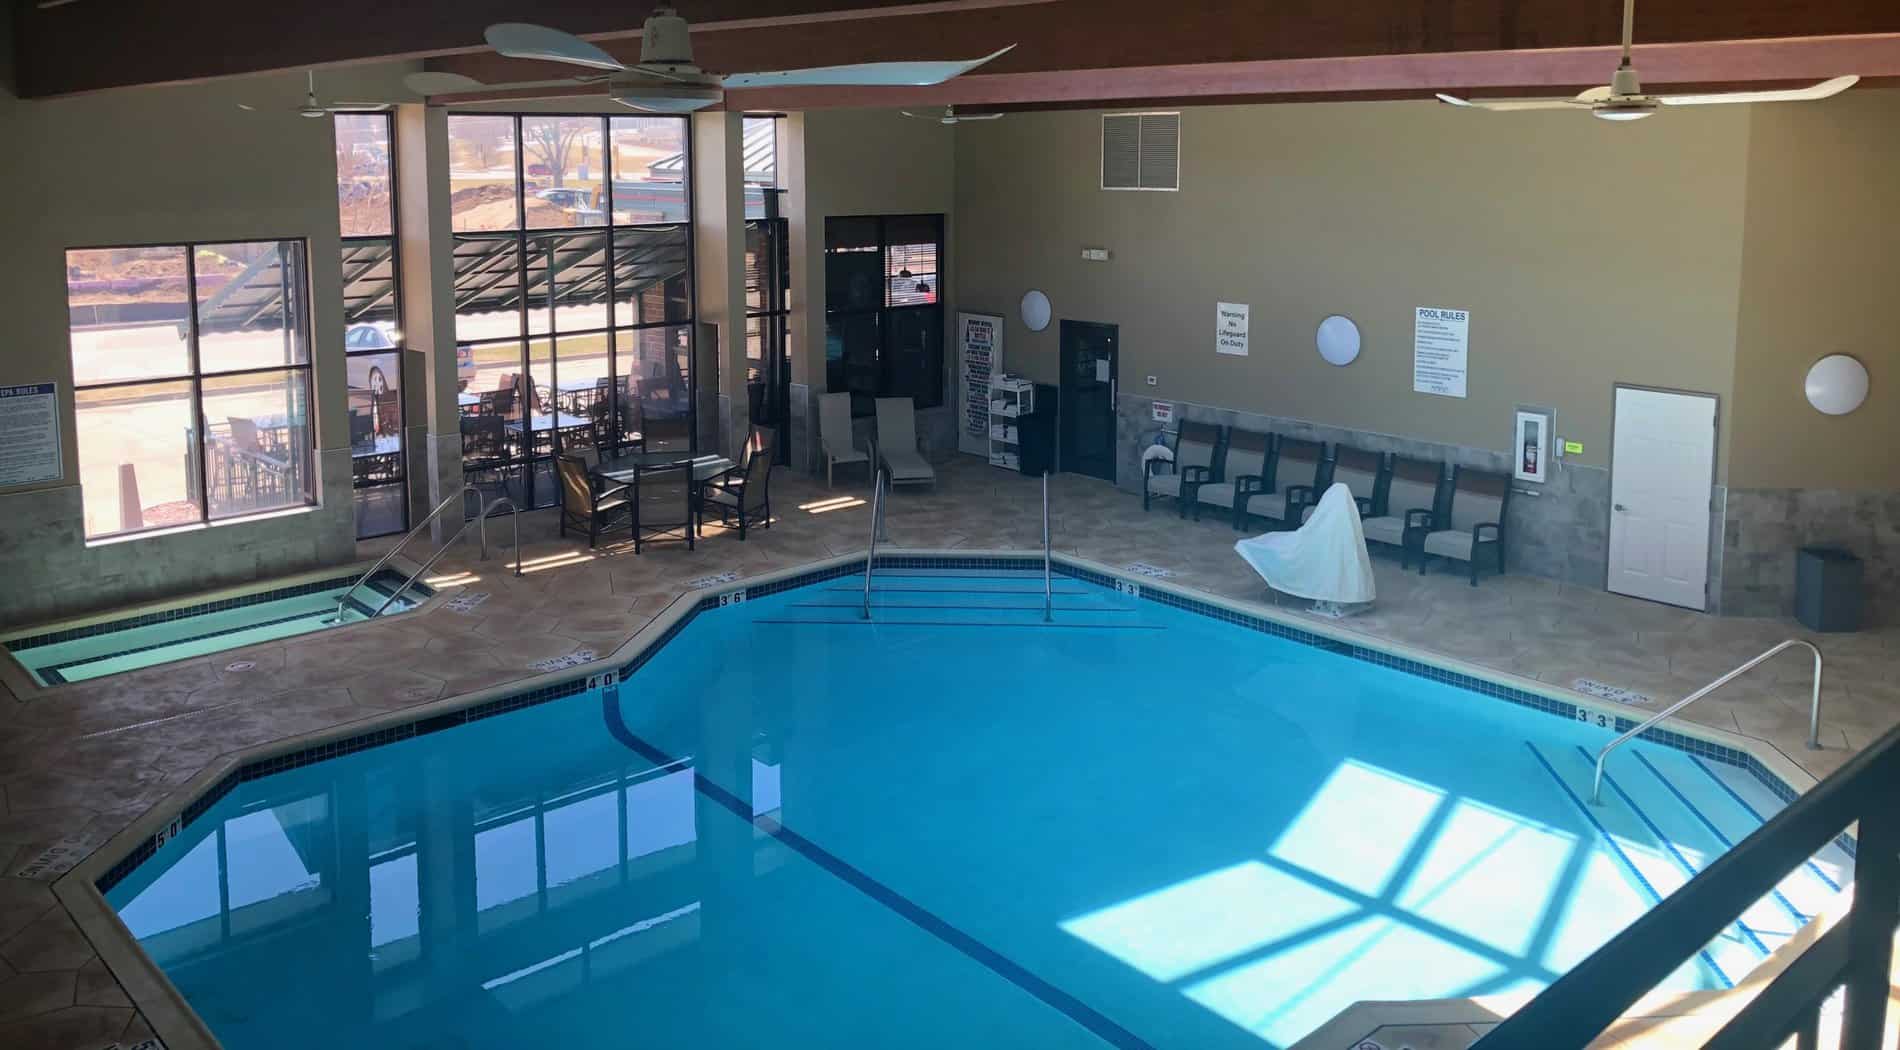 Full pool view